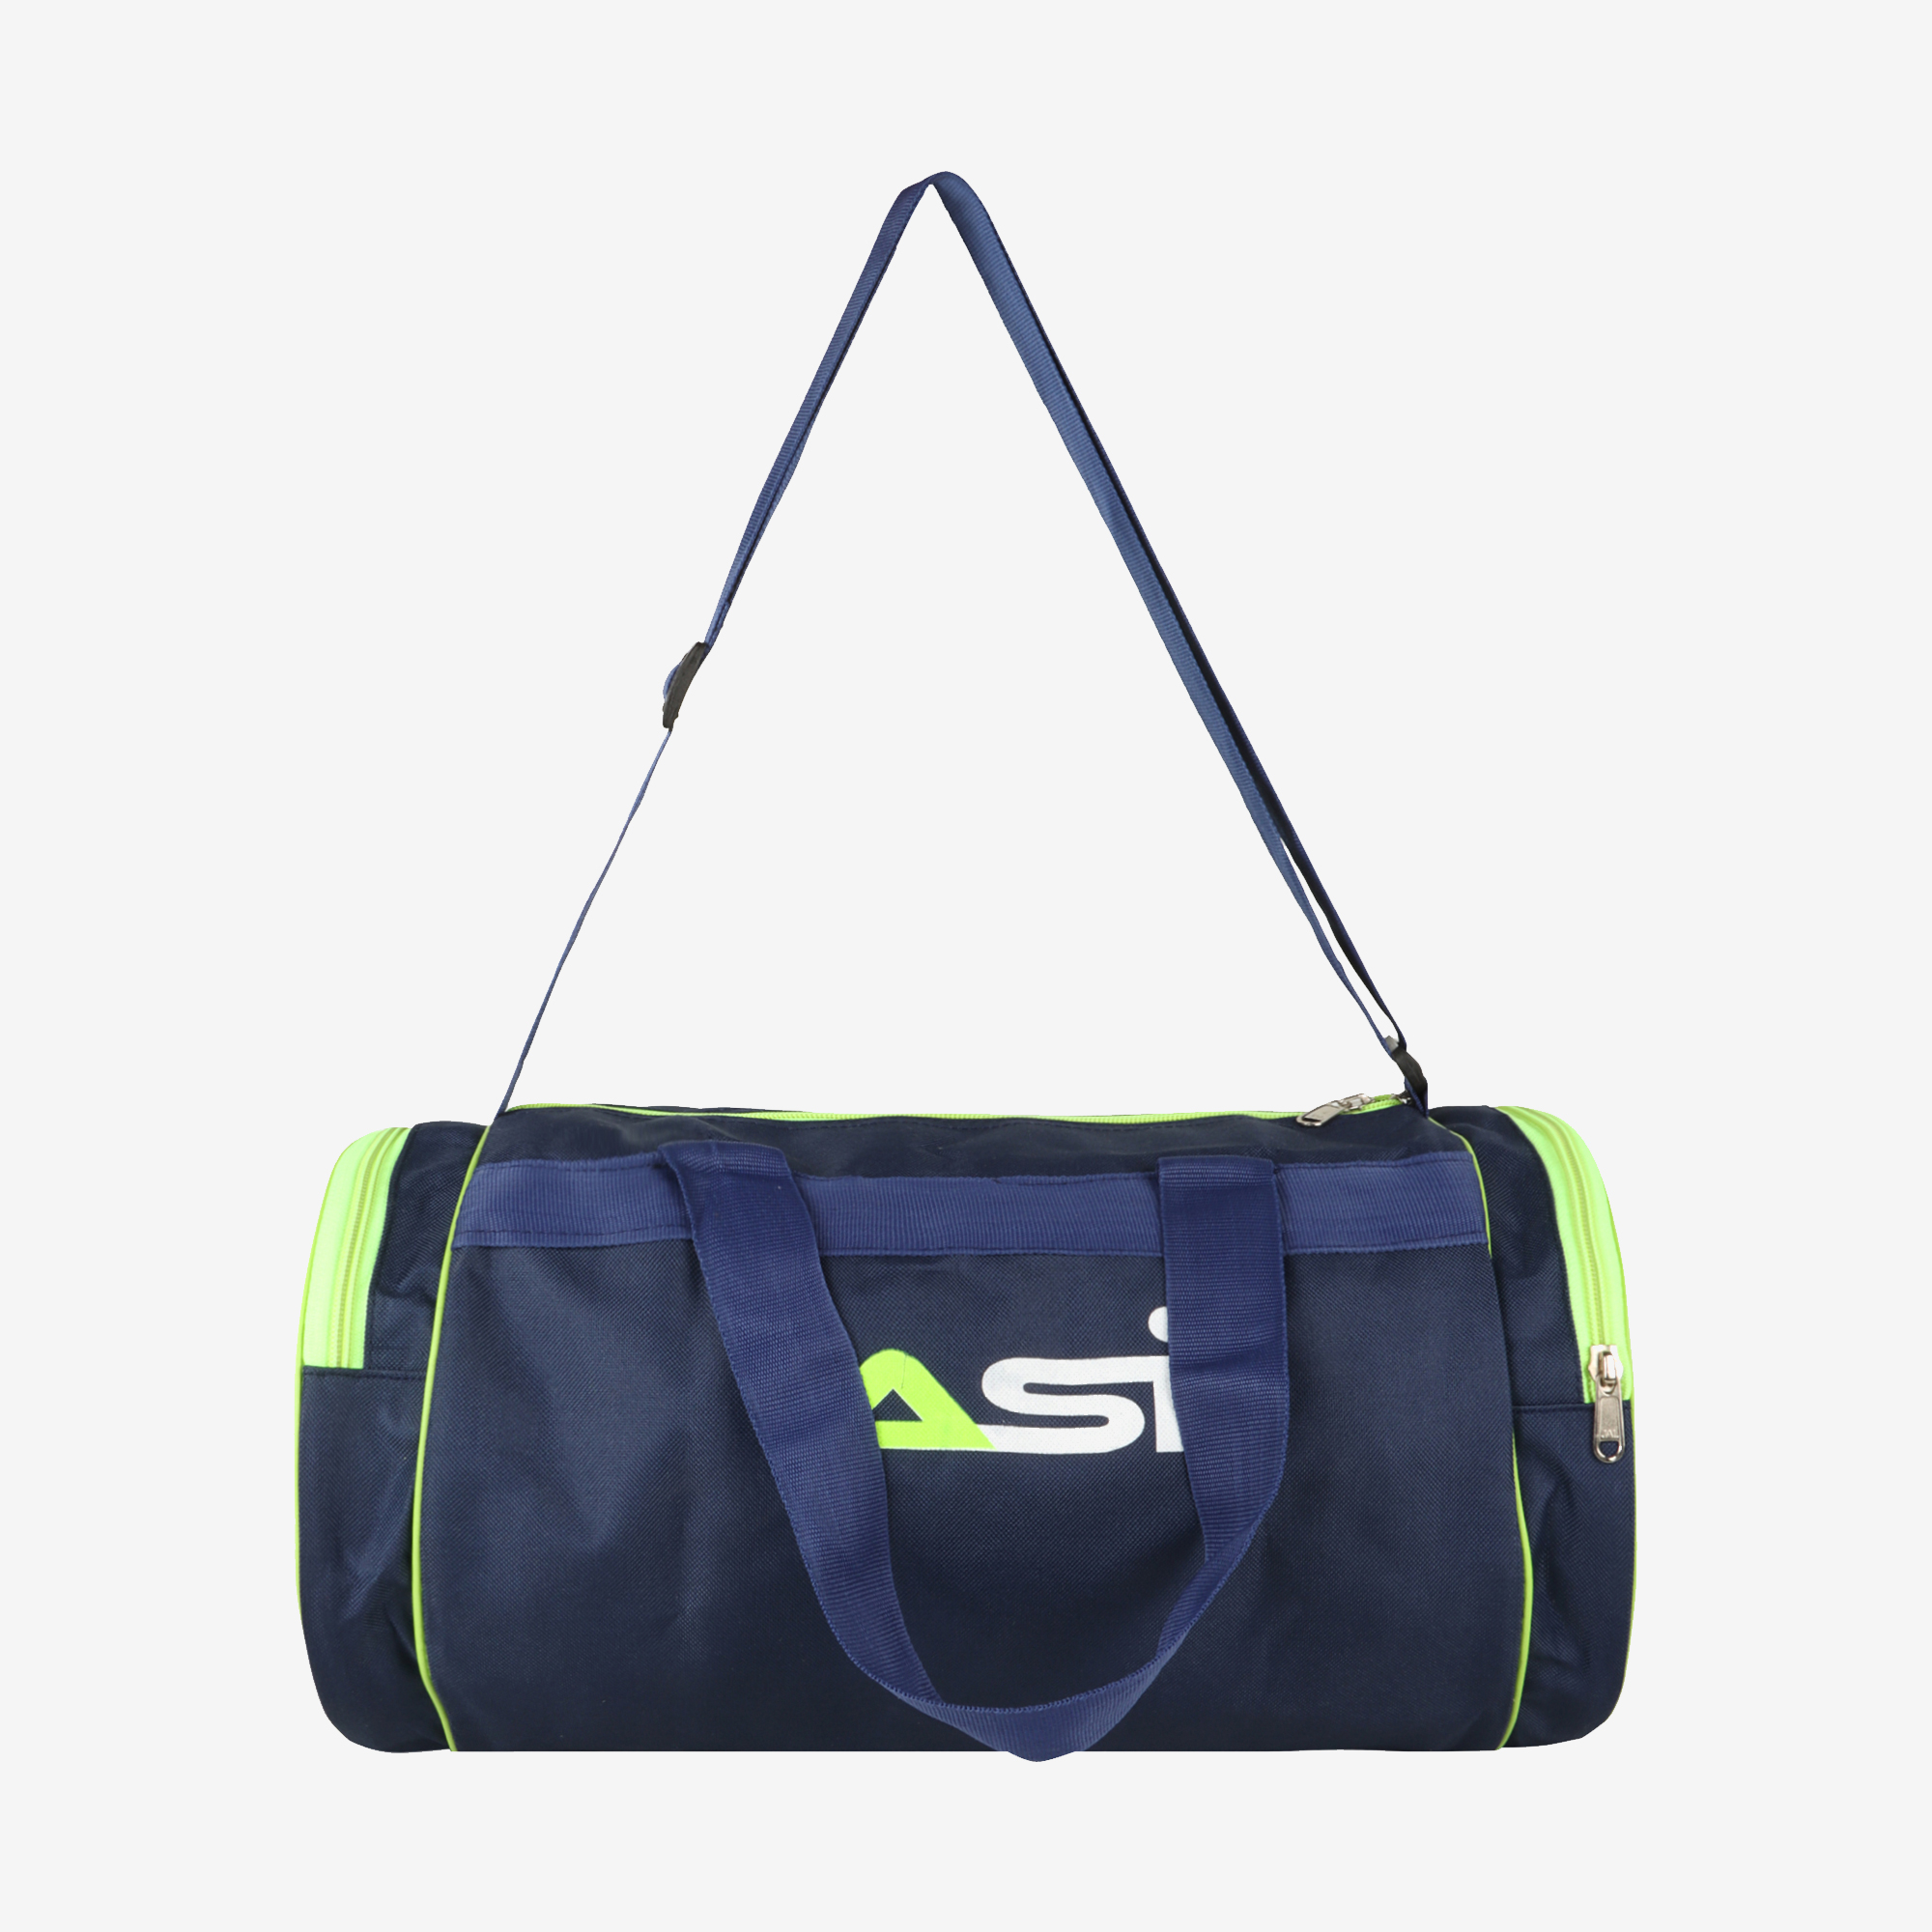 ASI Regular Gym Bag